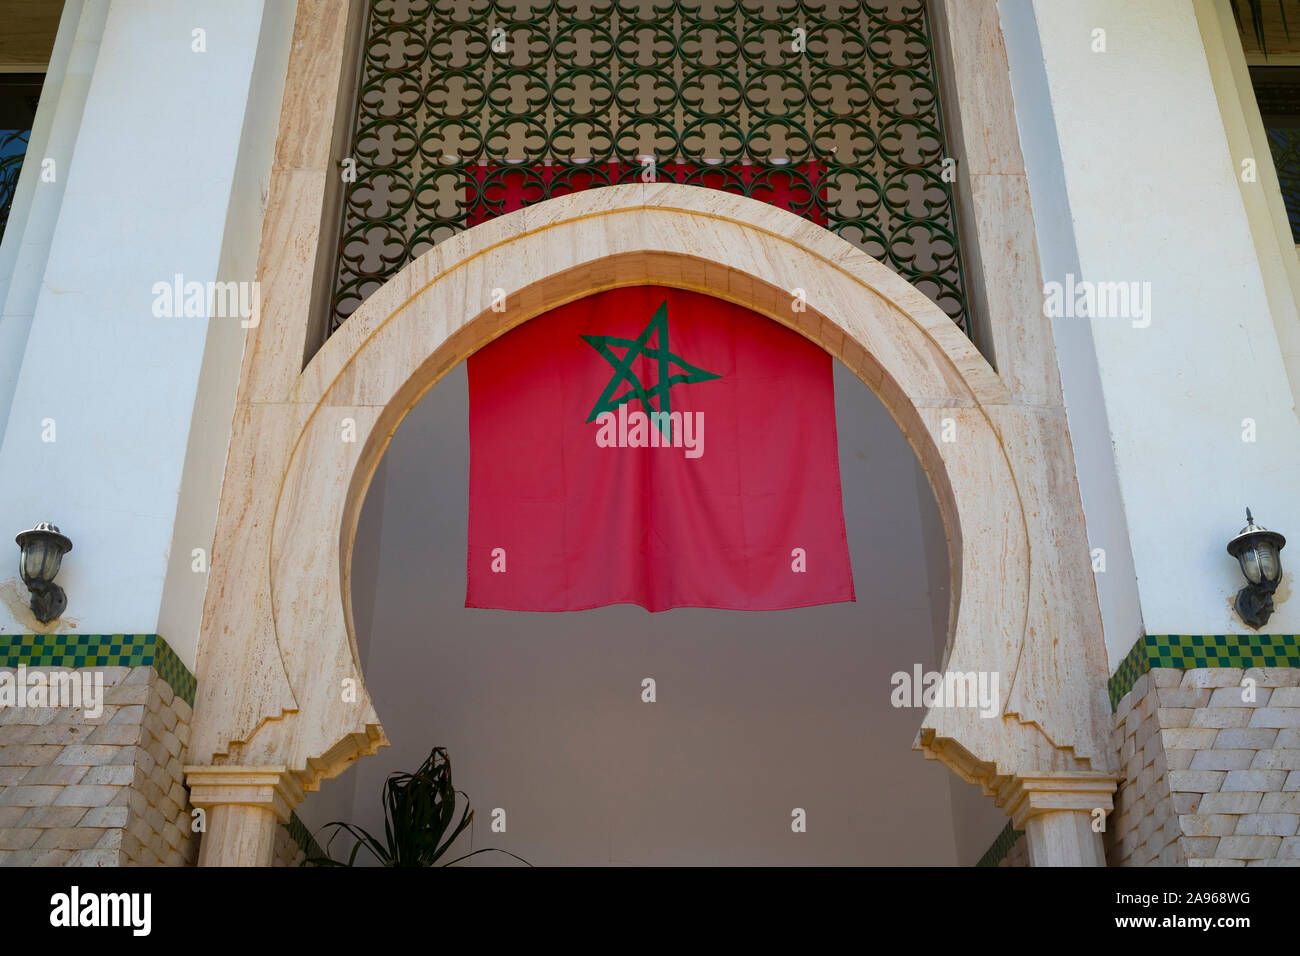 Asilah, Morocco-September 10, 2019: Marokkanische Flagge hängen in der Eingang eines offiziellen Gebäudes in Asilah, Marokko Stockfoto